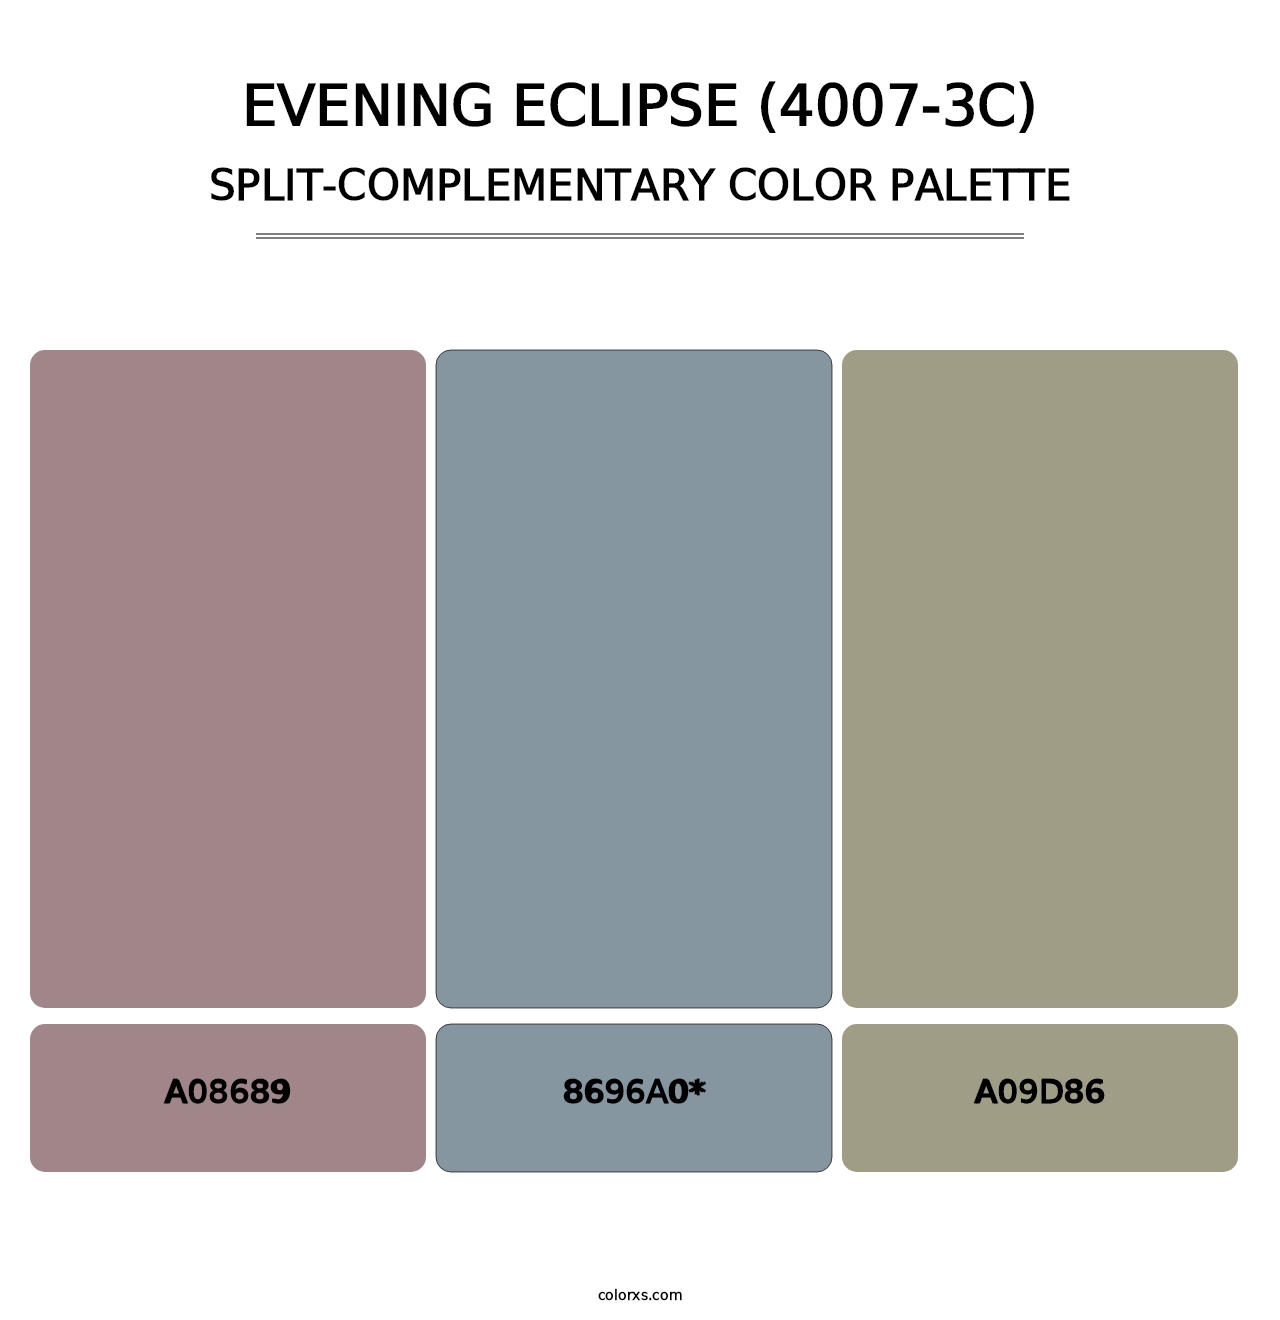 Evening Eclipse (4007-3C) - Split-Complementary Color Palette